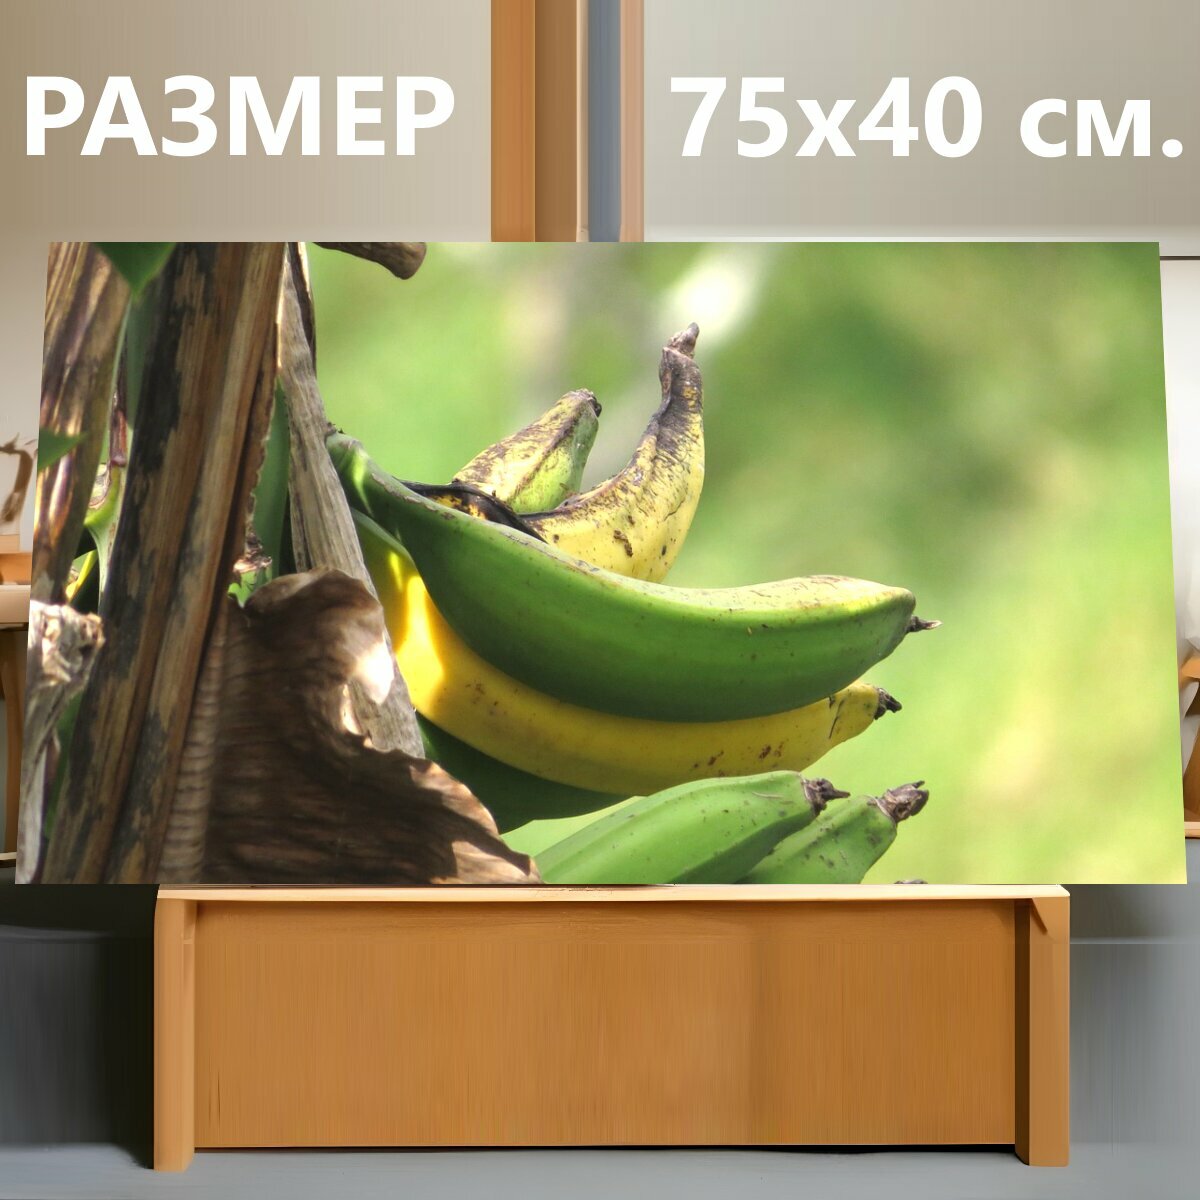 Картина на холсте "Картина, природа, банановой" на подрамнике 75х40 см. для интерьера